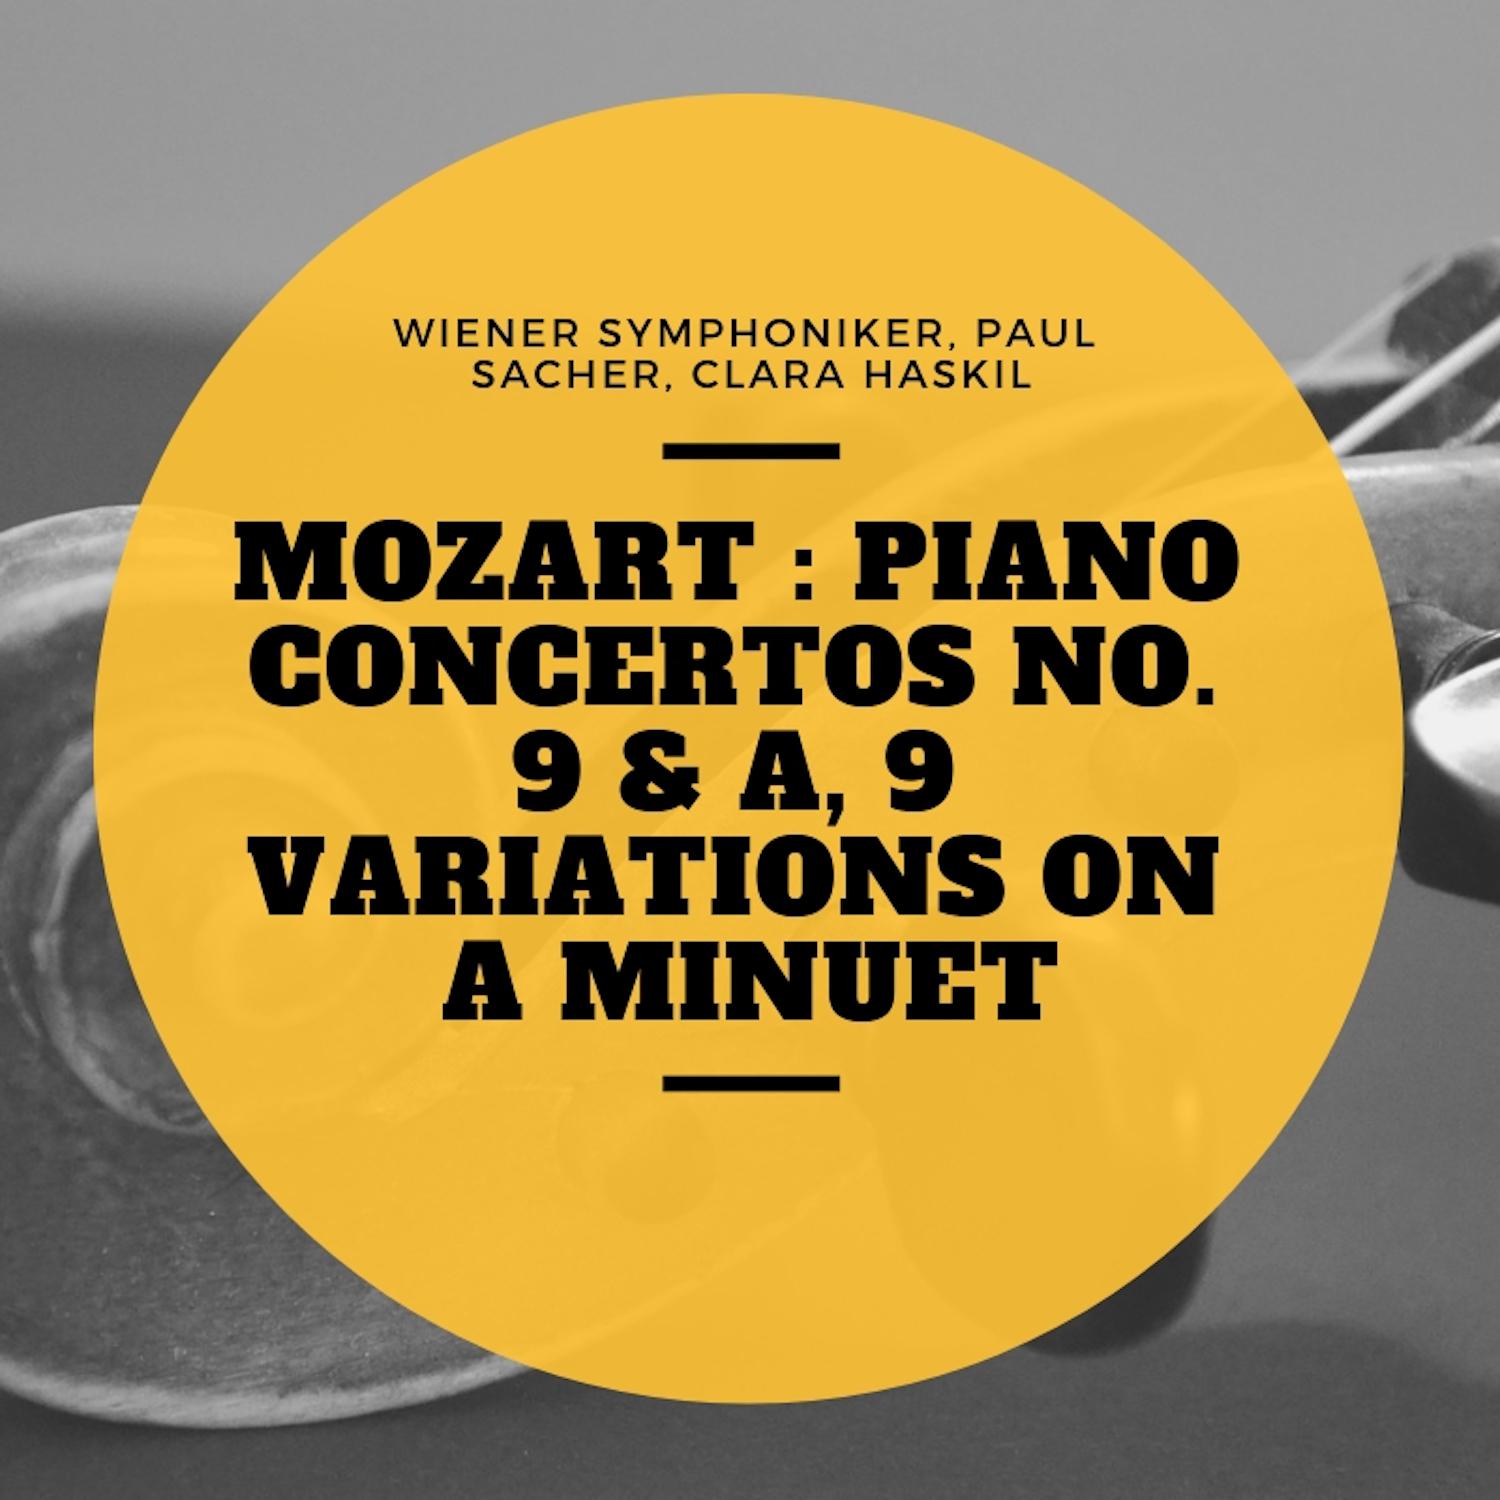 Mozart : Piano Concertos No. 9 & A, 9 Variations On a Minuet